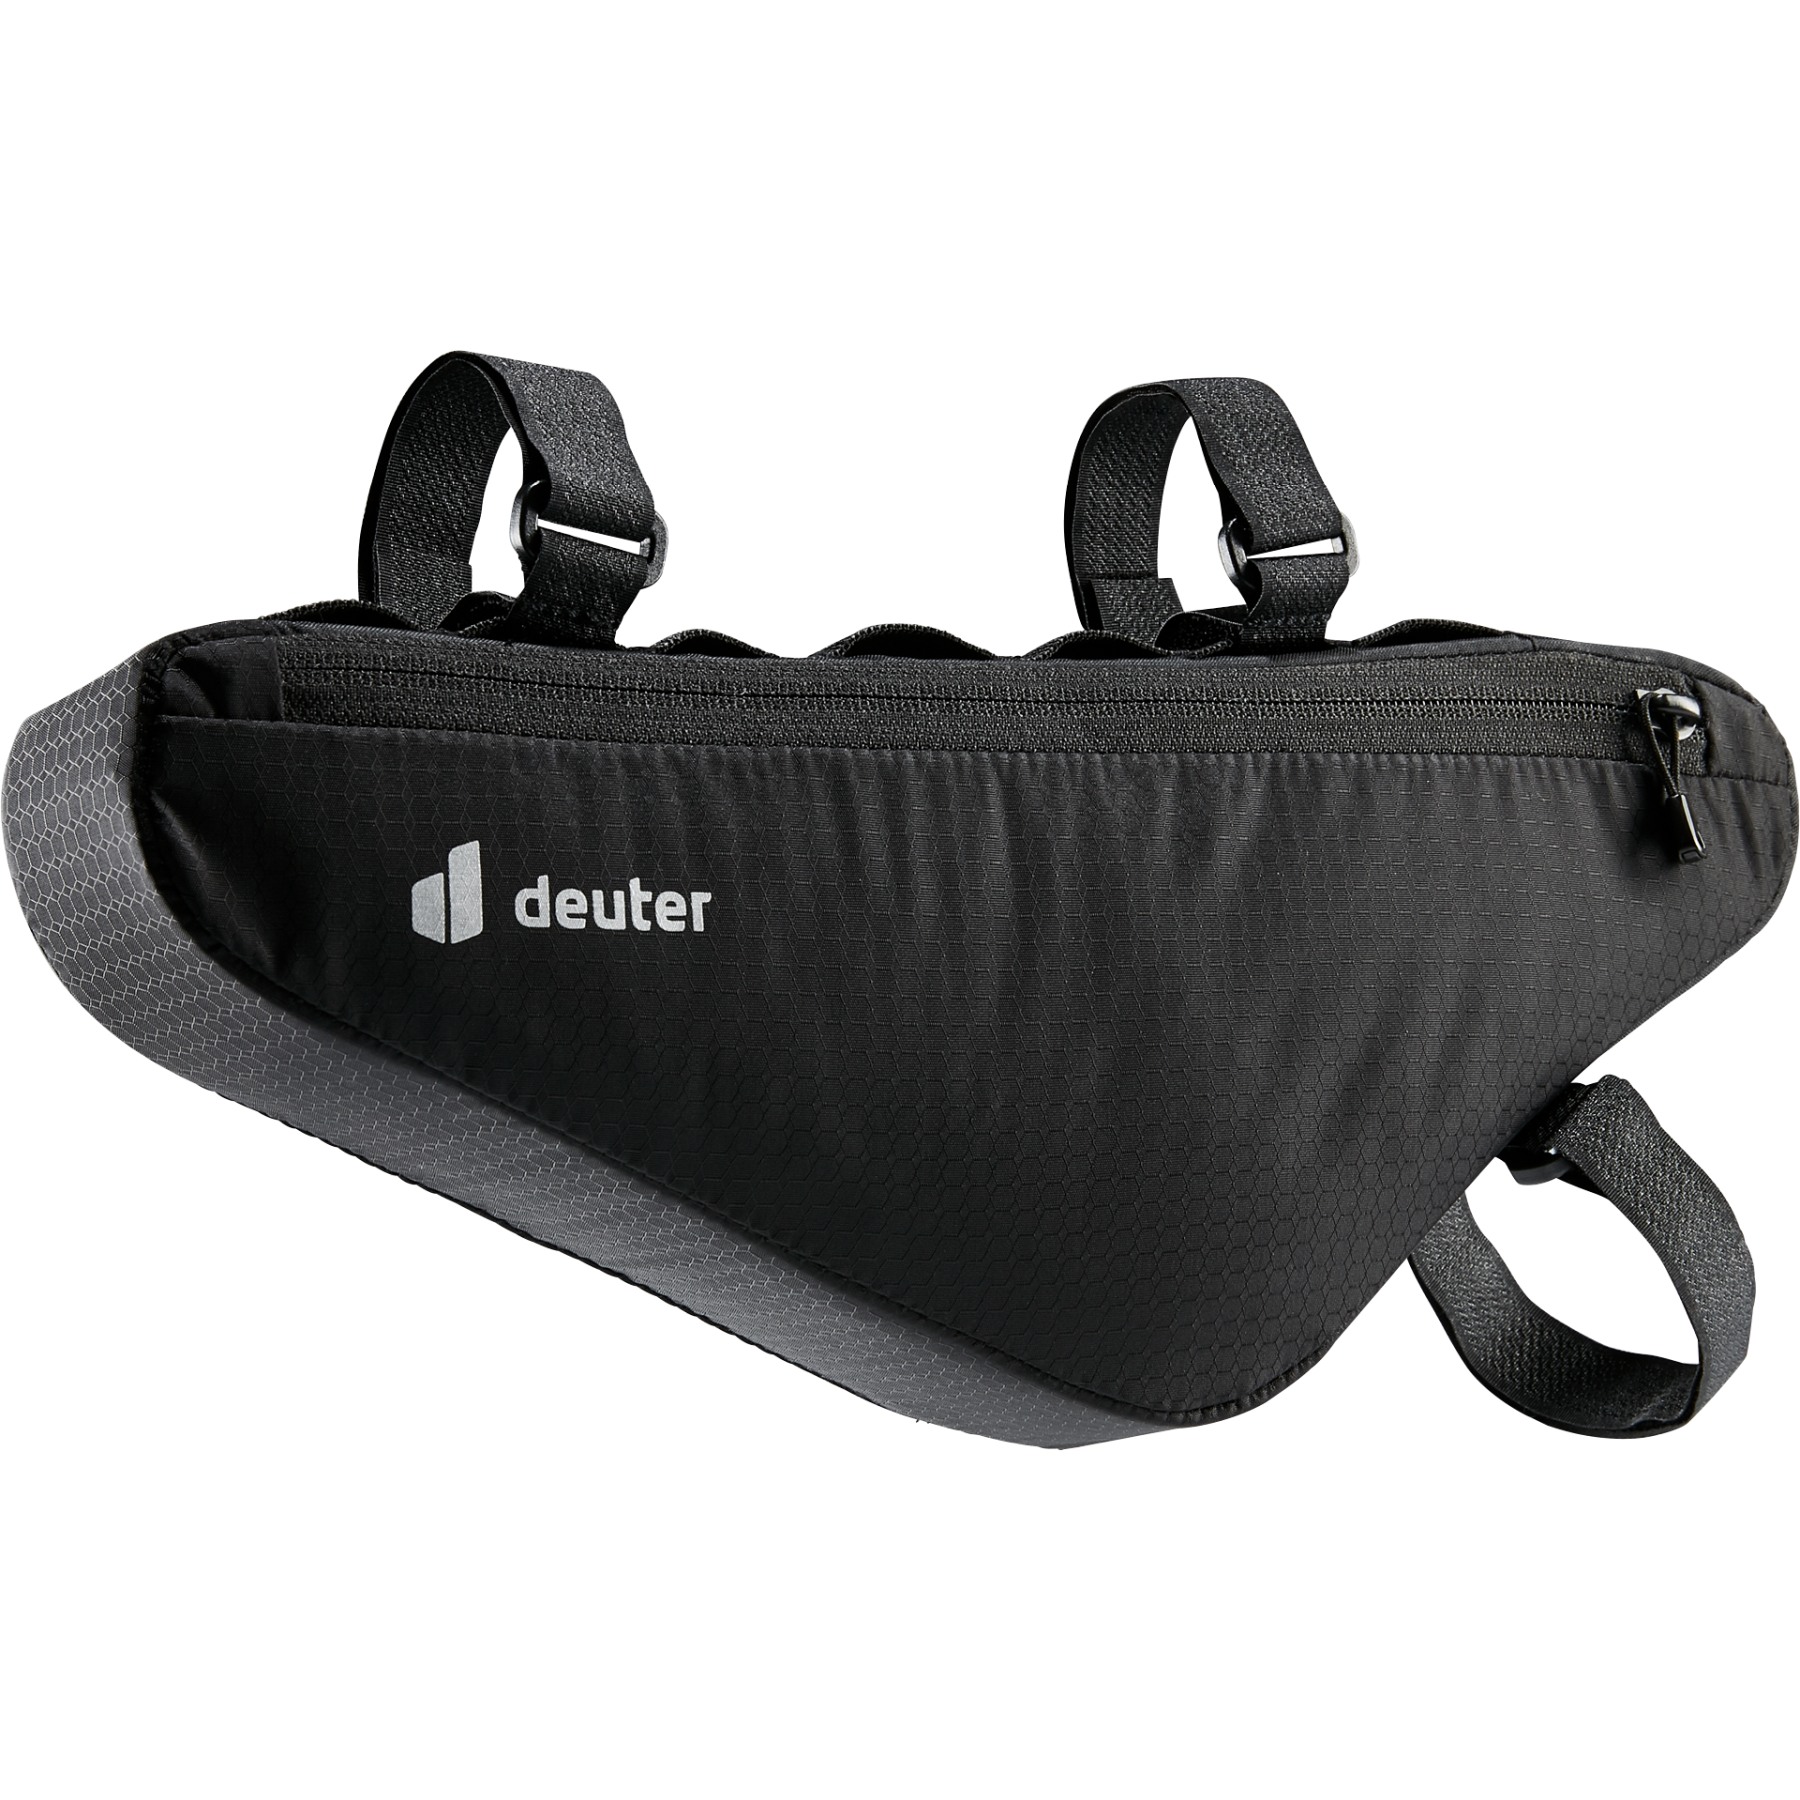 Productfoto van Deuter Triangle Front Bag 1.5L Frame Bag - black